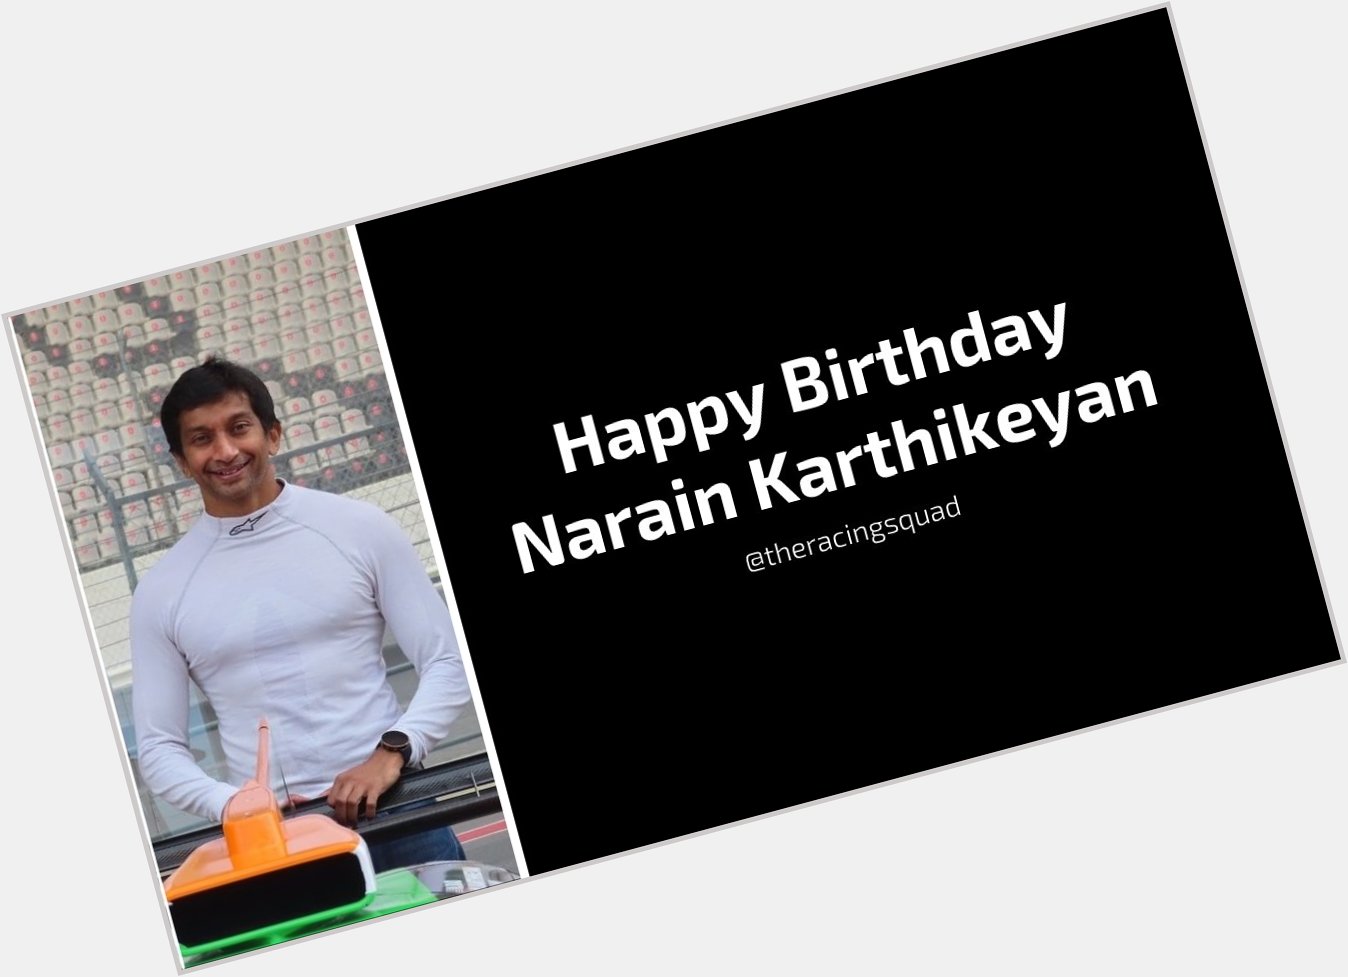 Wishing Narain Karthikeyan a very Happy Birthday      